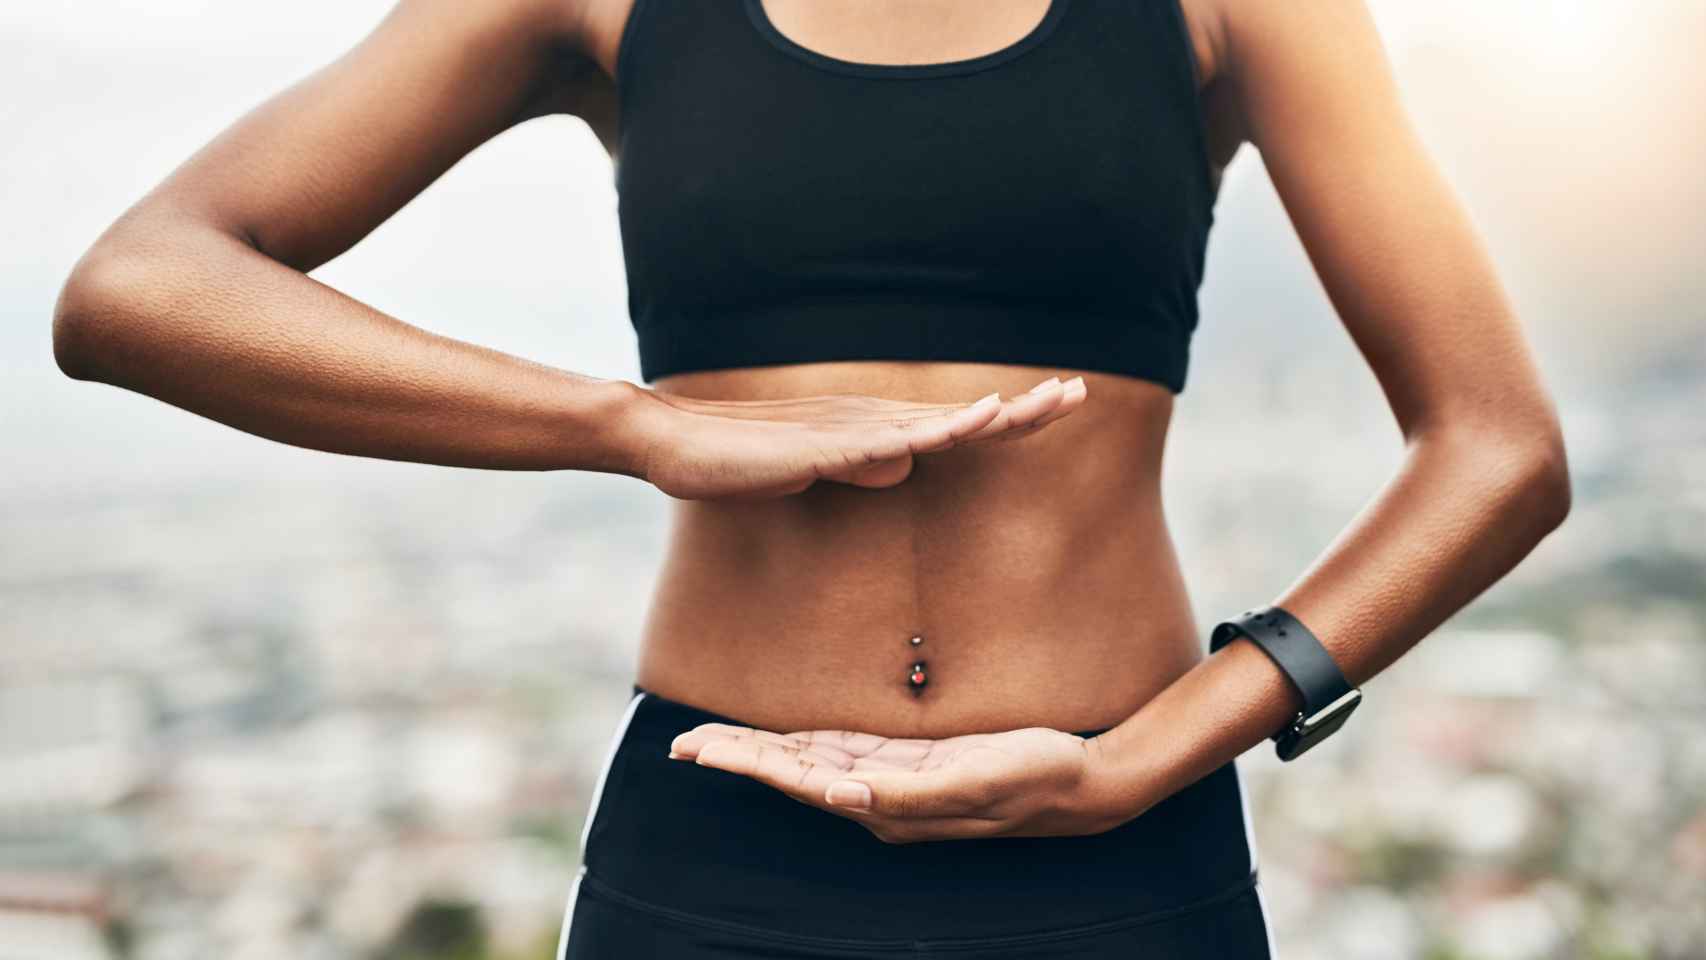 Abdomen plano: el ejercicio para tonificar y reducir la grasa abdominal